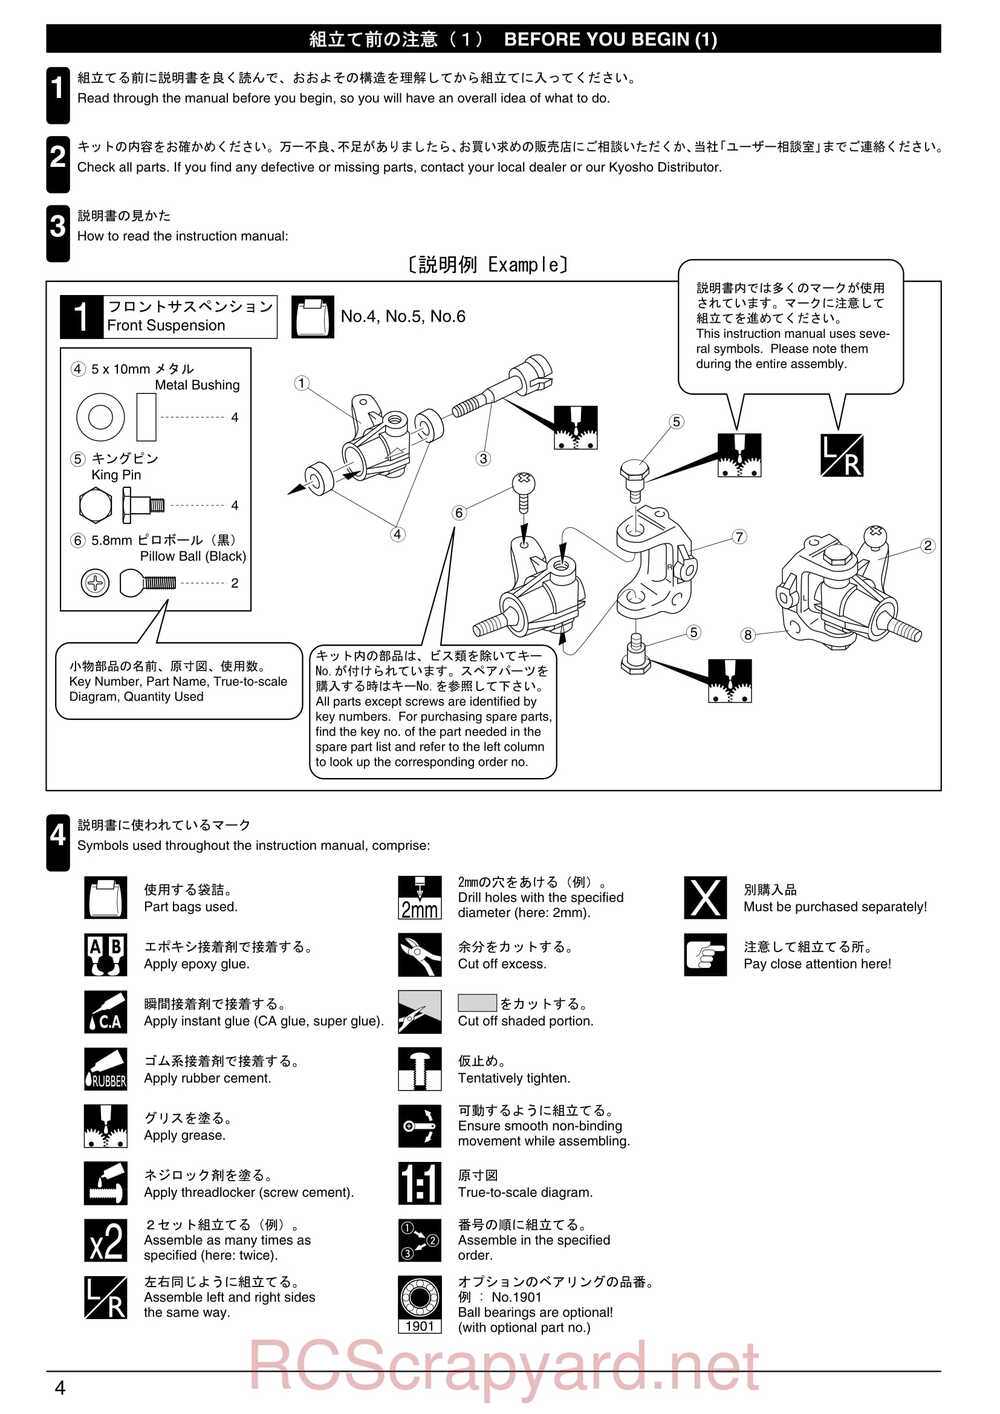 Kyosho - 30075 - Lazer-ZX-S-Evo - Manual - Page 04